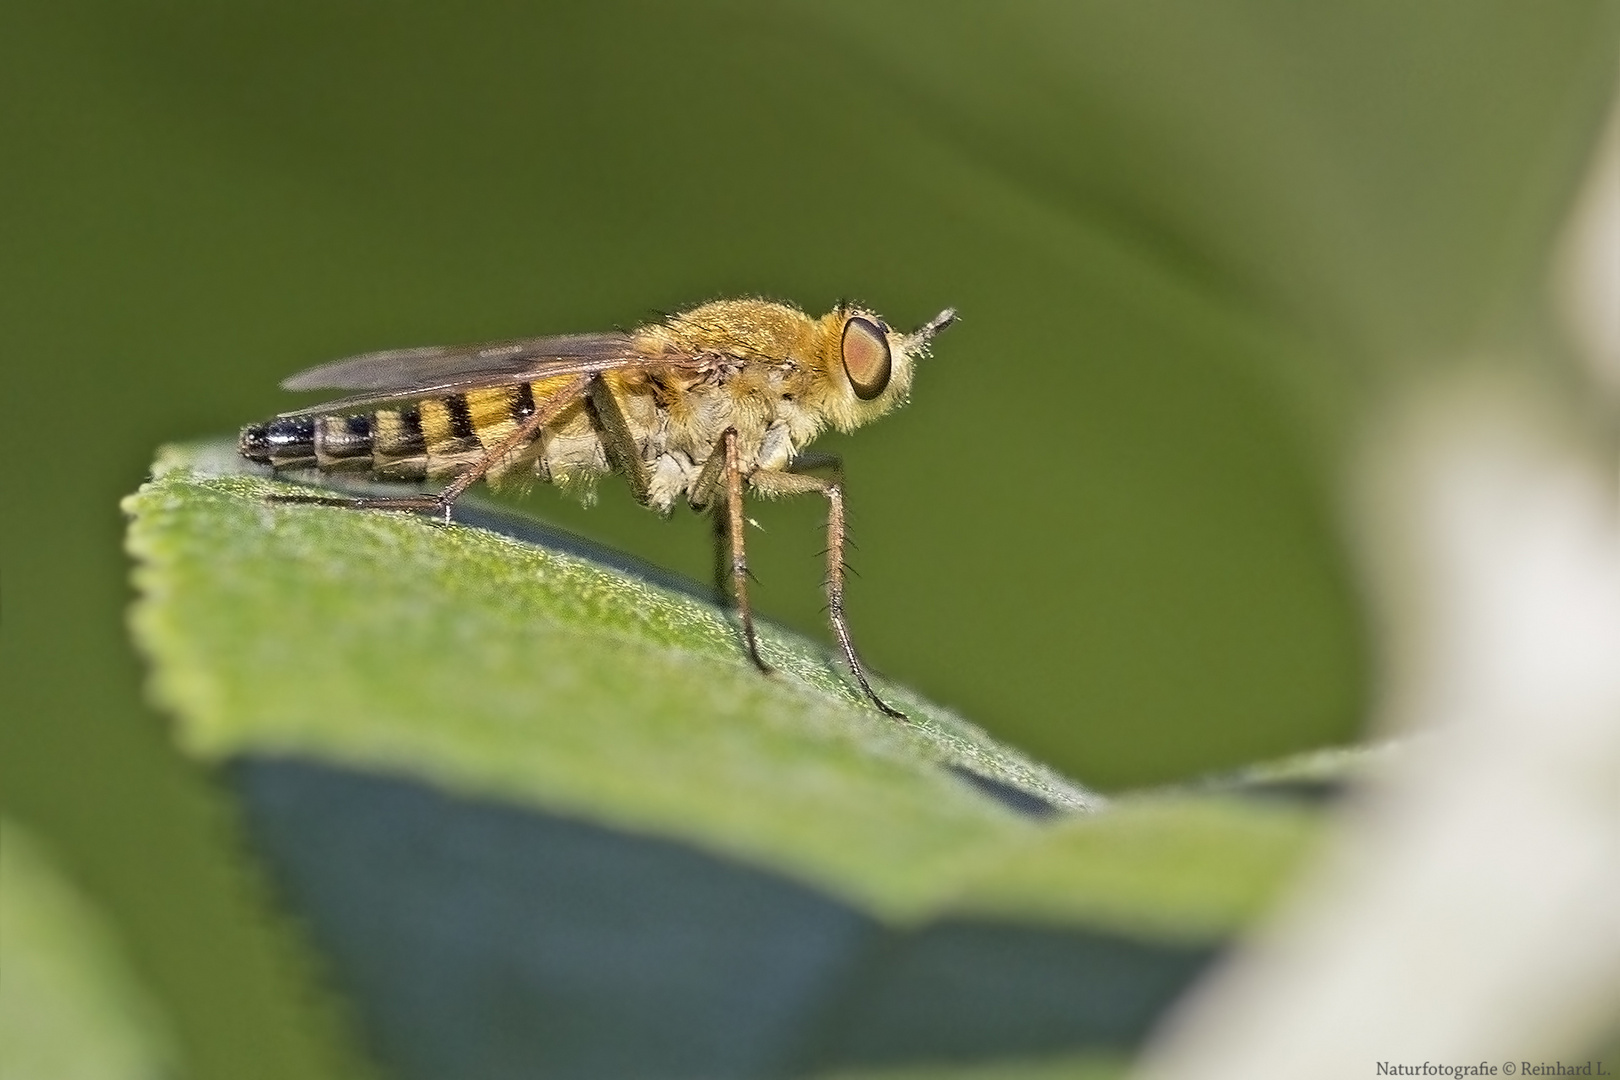  Projekt " Insekten in unserem Garten " : Schnepfenfliege